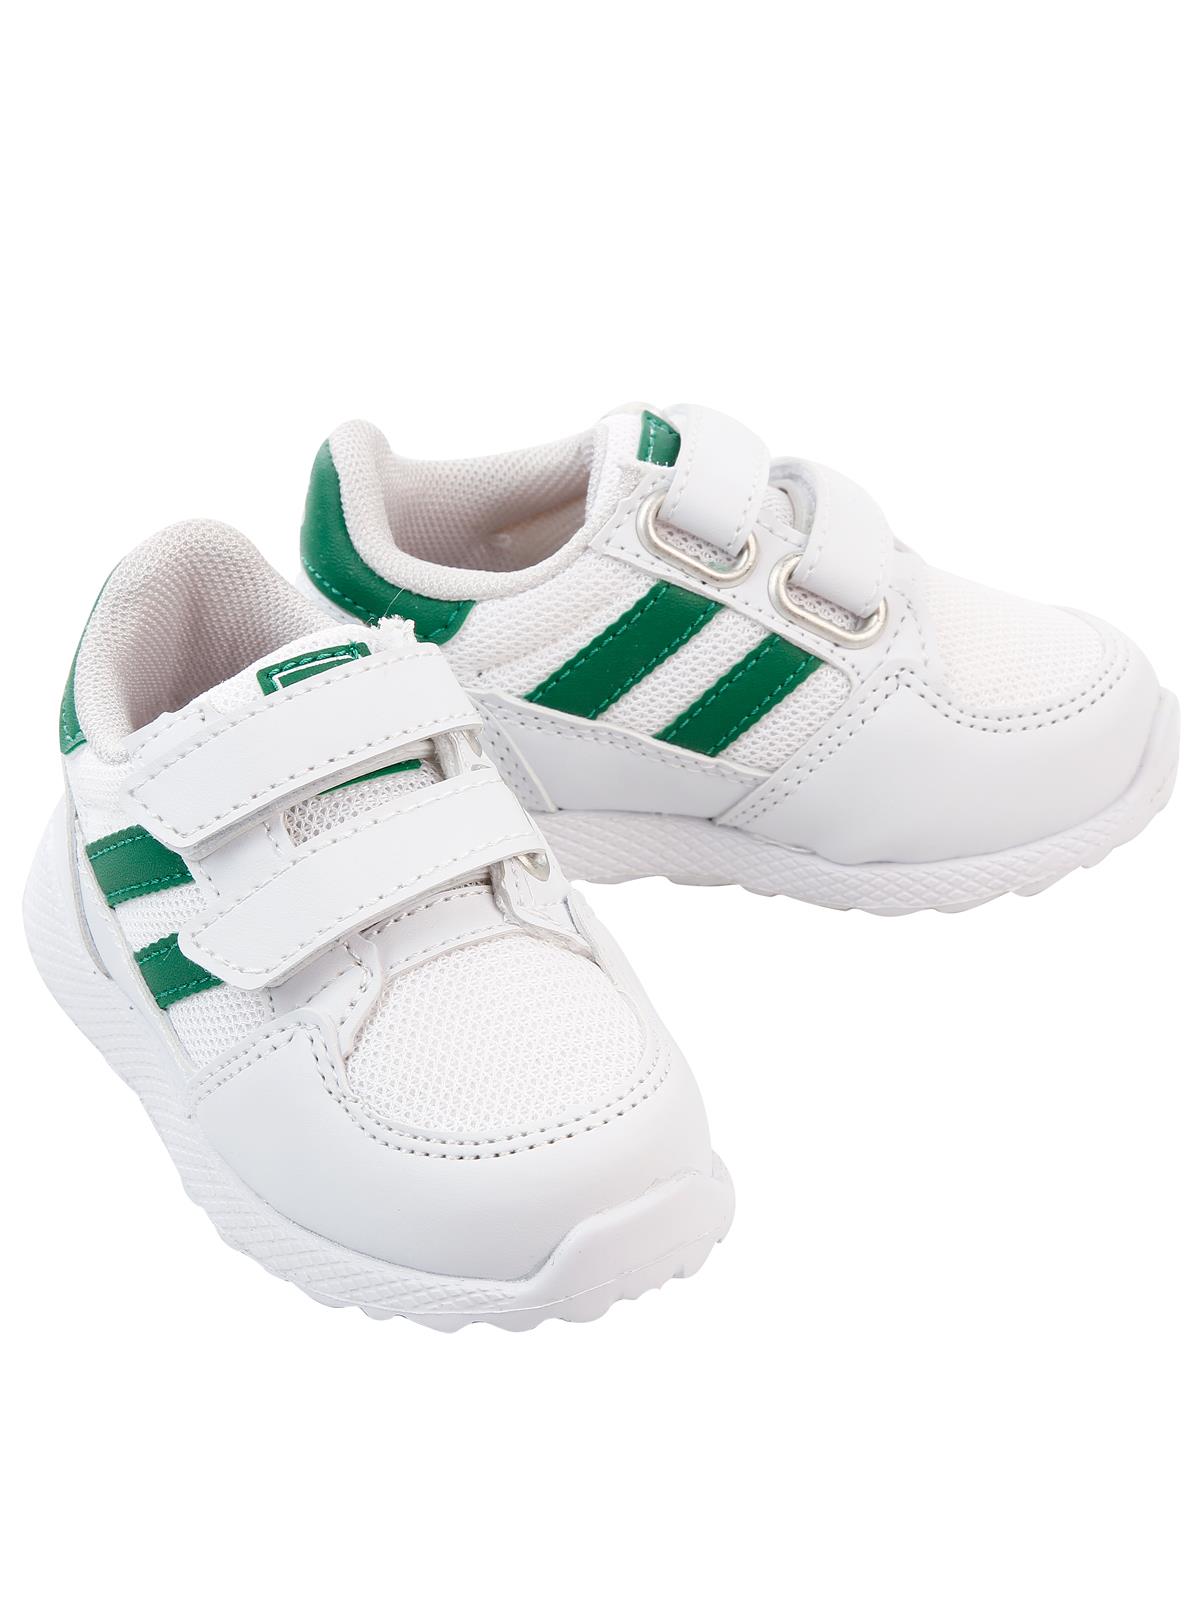 Sport Erkek Çocuk Spor Ayakkabı 21-25 Numara Beyaz-Yeşil